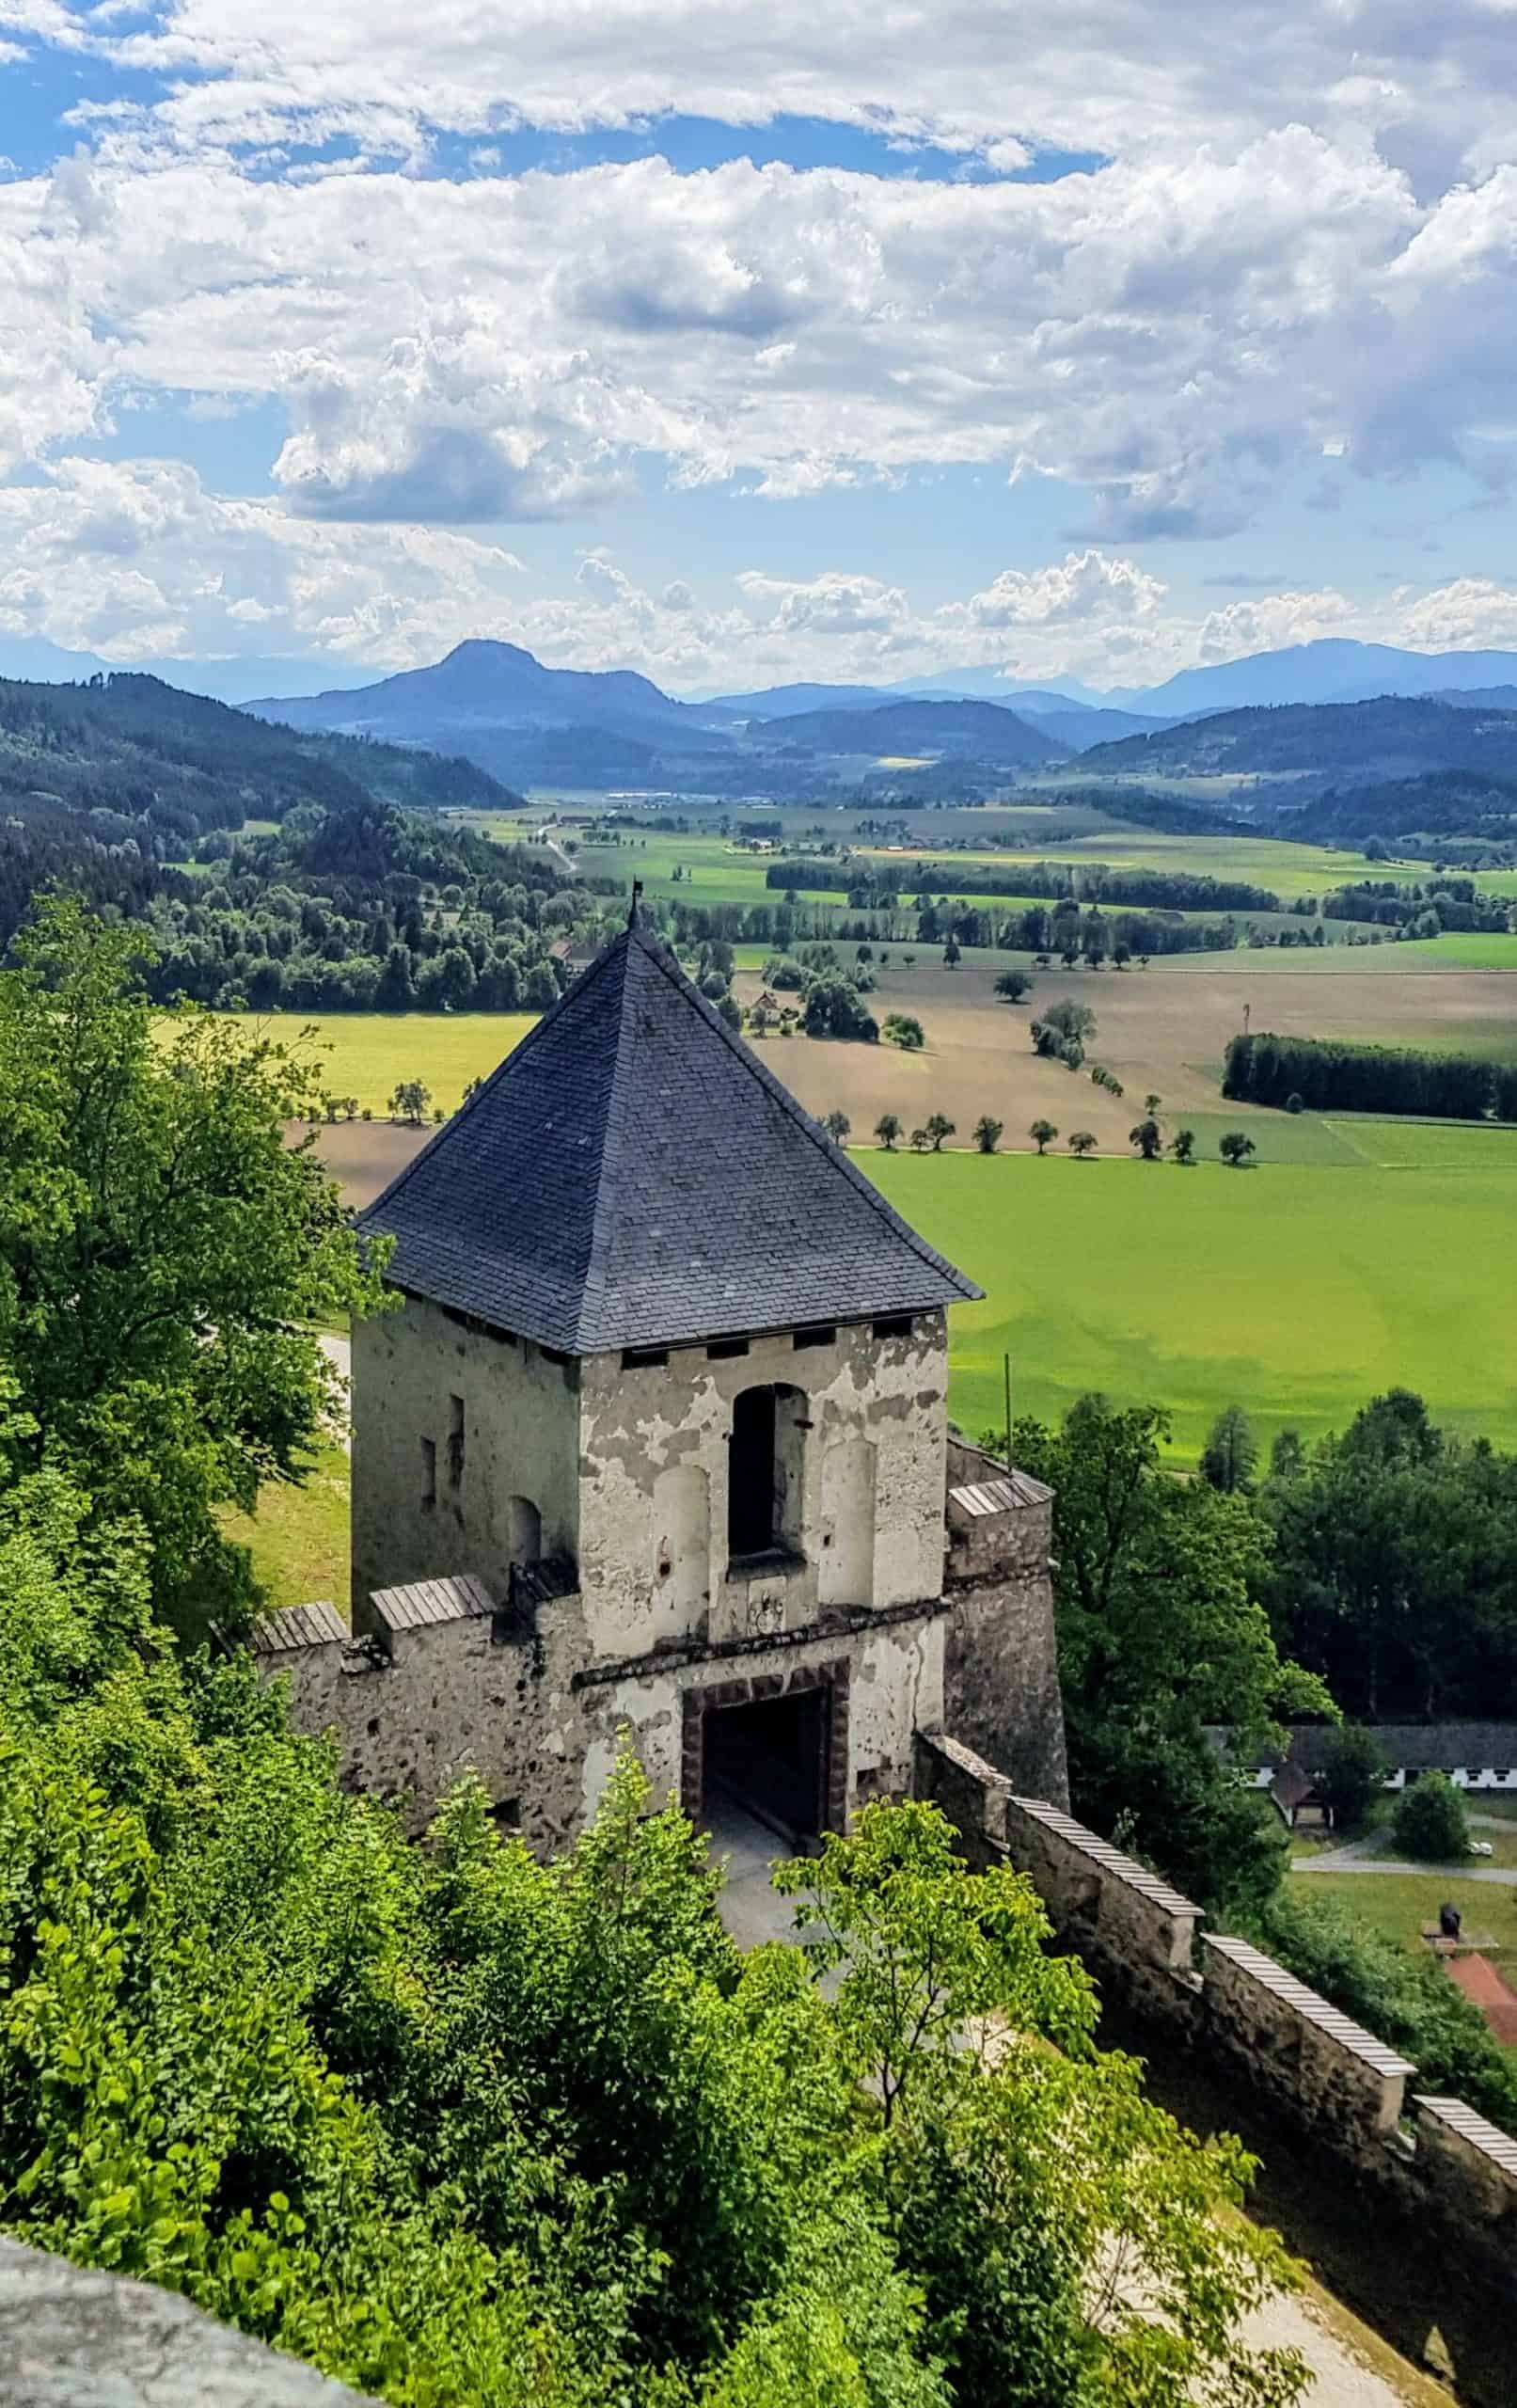 Mittelalterliche Ausflugsziele in Österreich: Burg Hochosterwitz. Landschaftstor und Blick auf Landschaft in Kärnten.